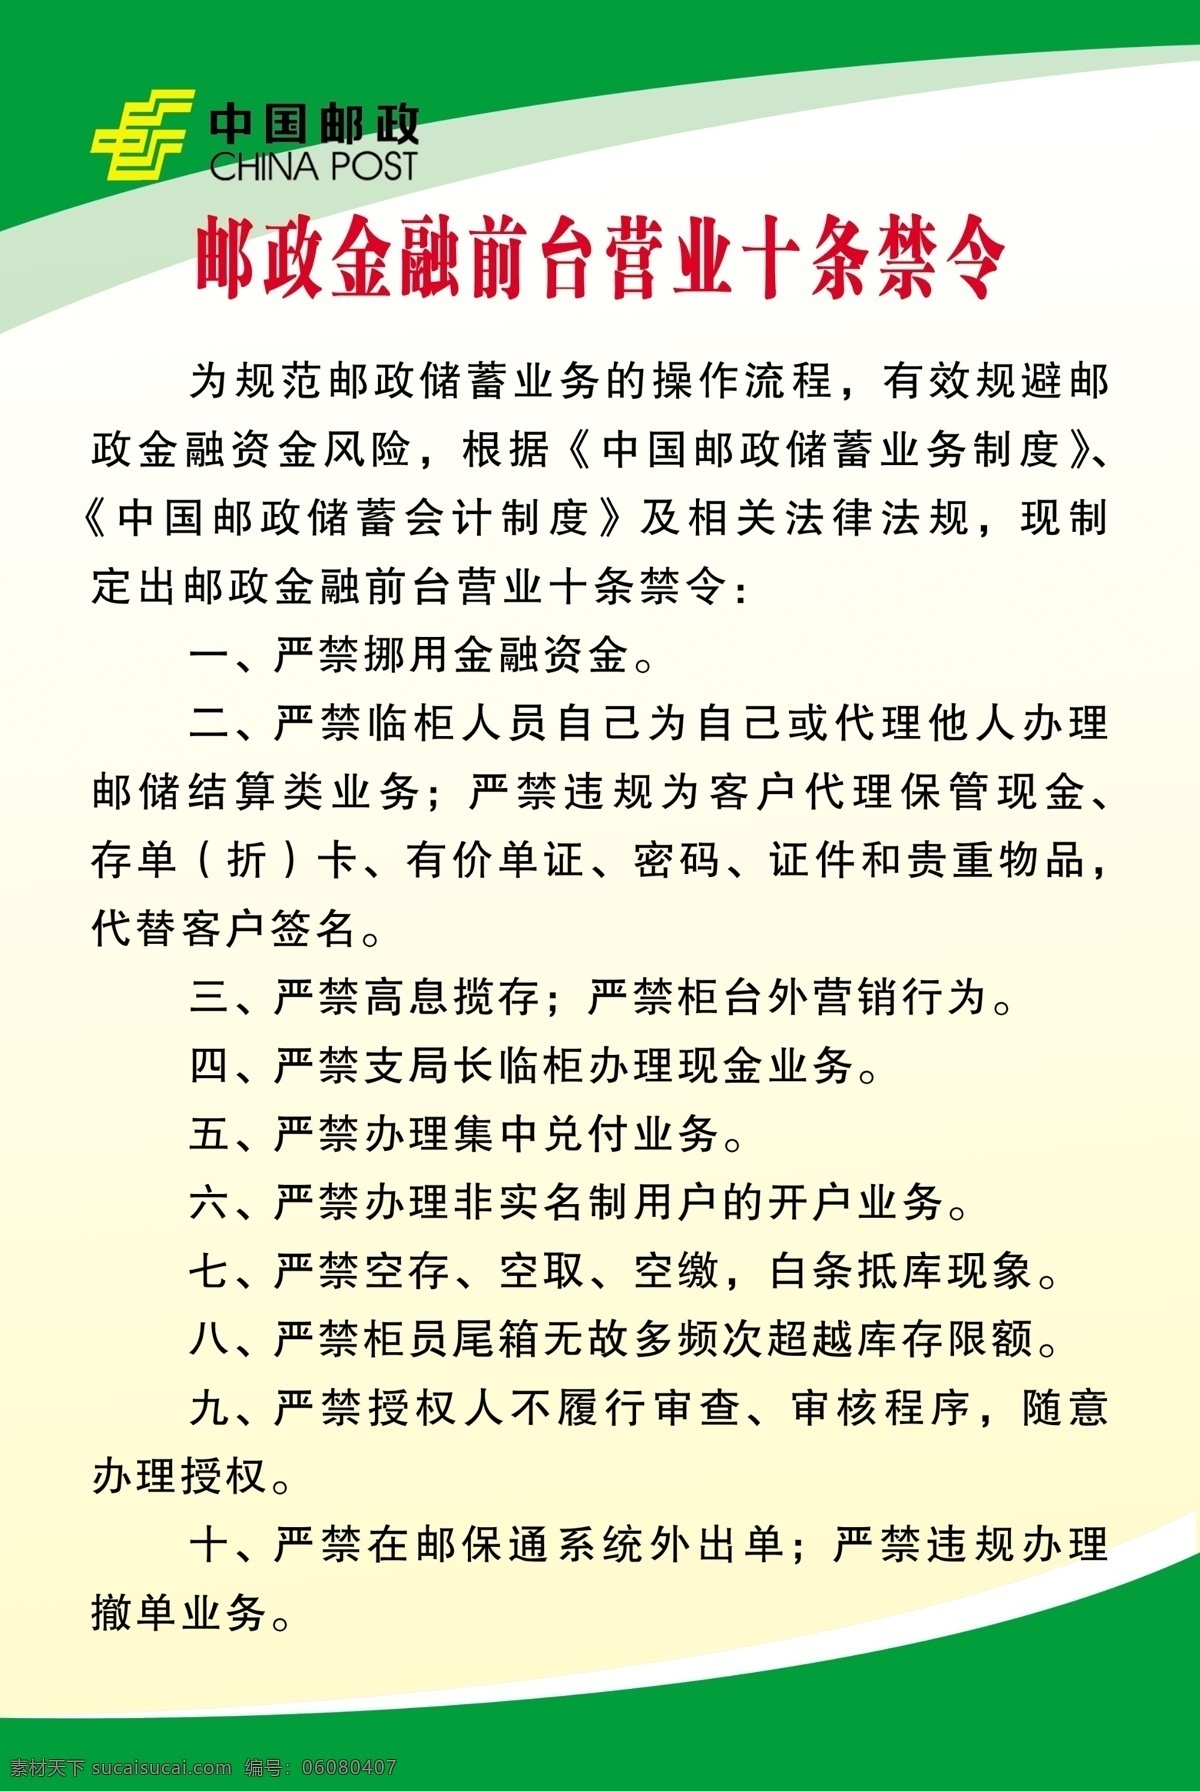 中国 邮政 金融 前台 十 条 禁令 展板 营业 十条禁令 邮政制度 展板模板 广告设计模板 源文件